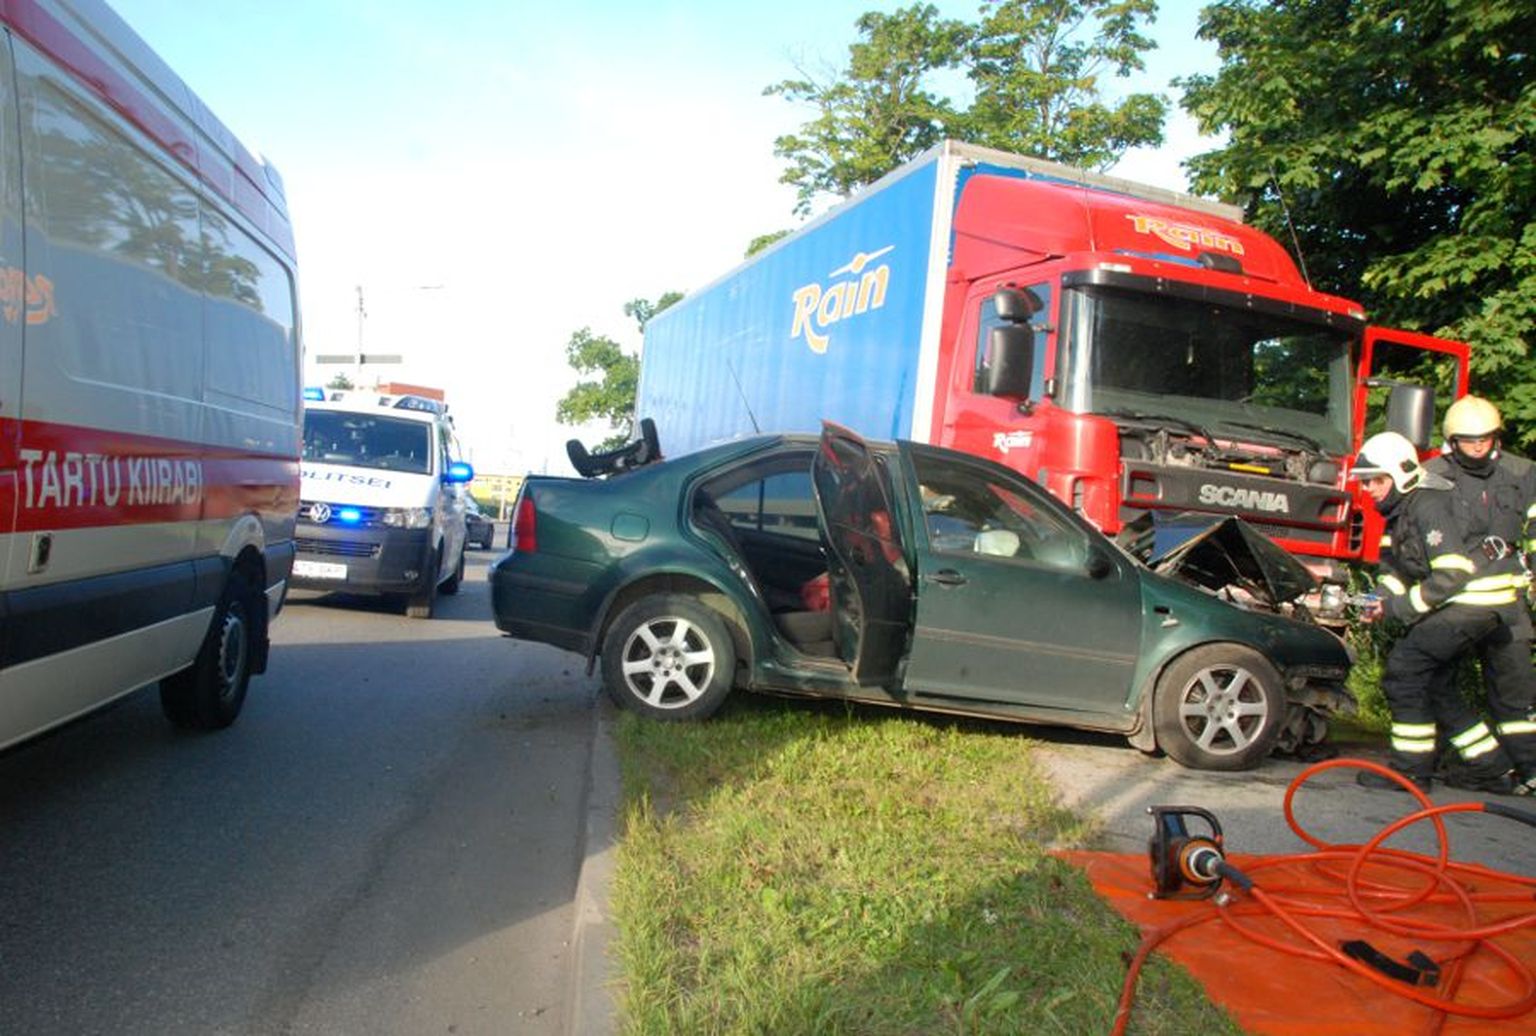 Täna hommikul juhtus Tartu linnas liiklusõnnetus, kus veo- ja sõiduauto kokkupõrkes hukkus autot juhtinud 41-aastane naine.